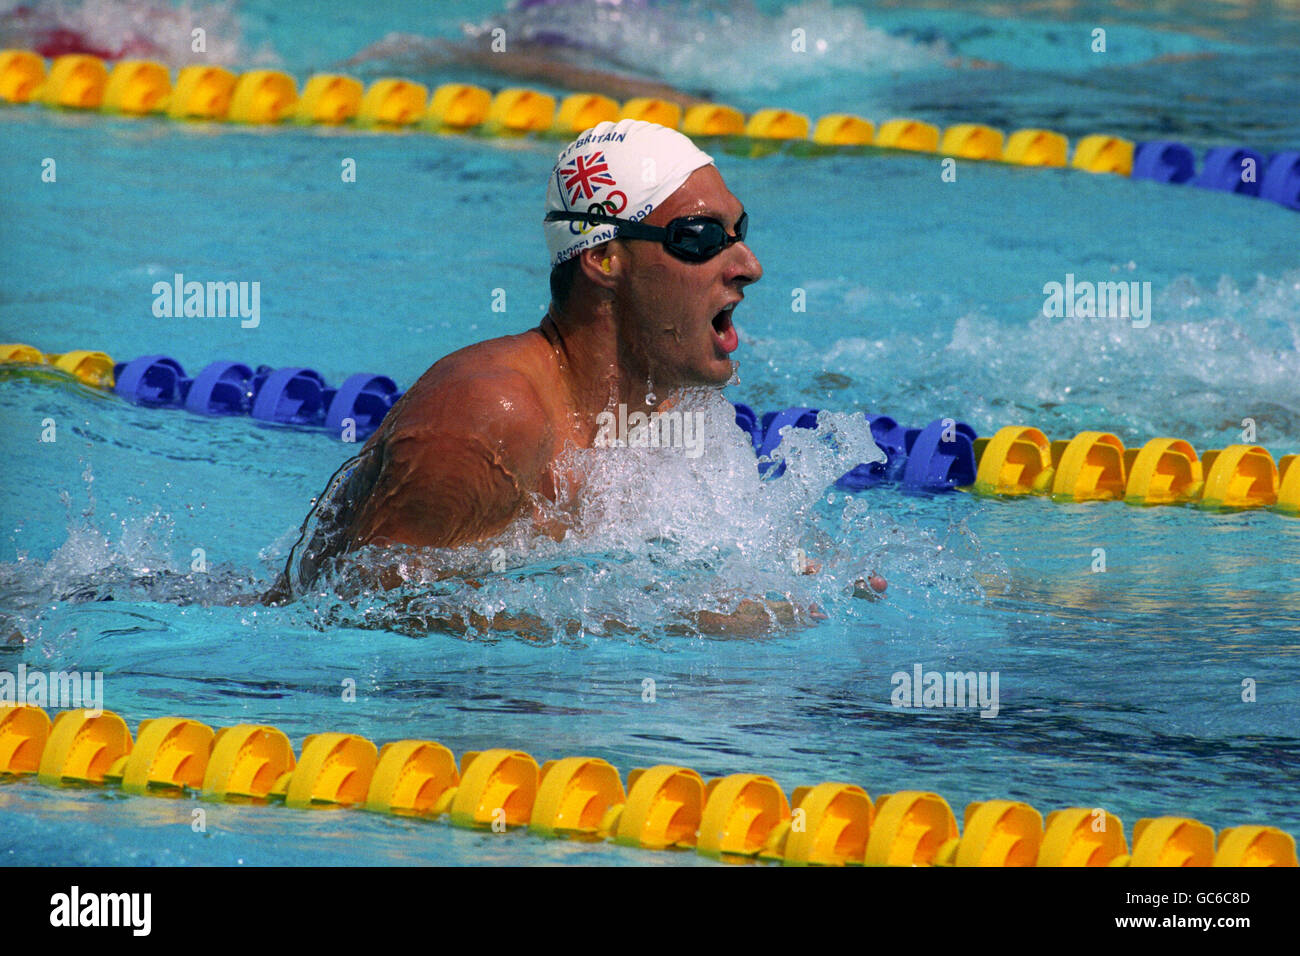 Olympischen Spiele Spiele Barcelona 1992 - schwimmen - Herren 200 Meter  Brustschwimmen - Finale Stockfotografie - Alamy